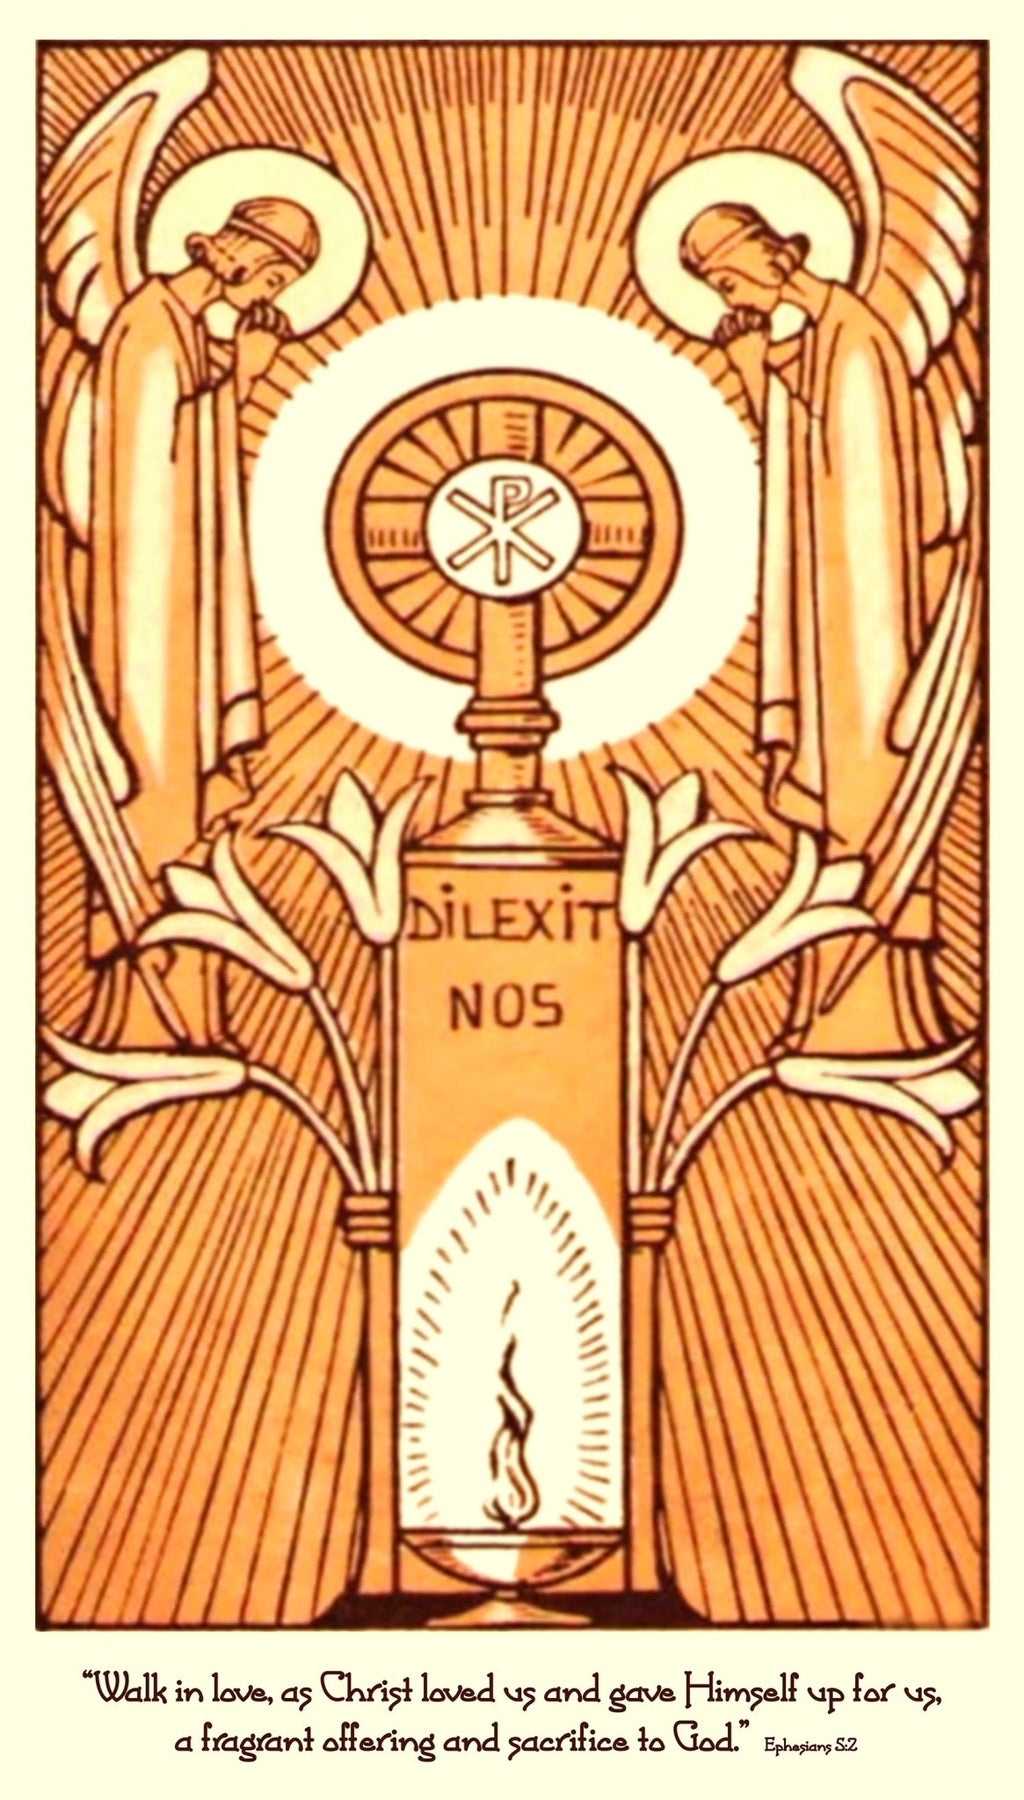 Blessed Sacrament of the Altar Art Deco "Dilexit Nos" T-Shirt - Catholicamtees